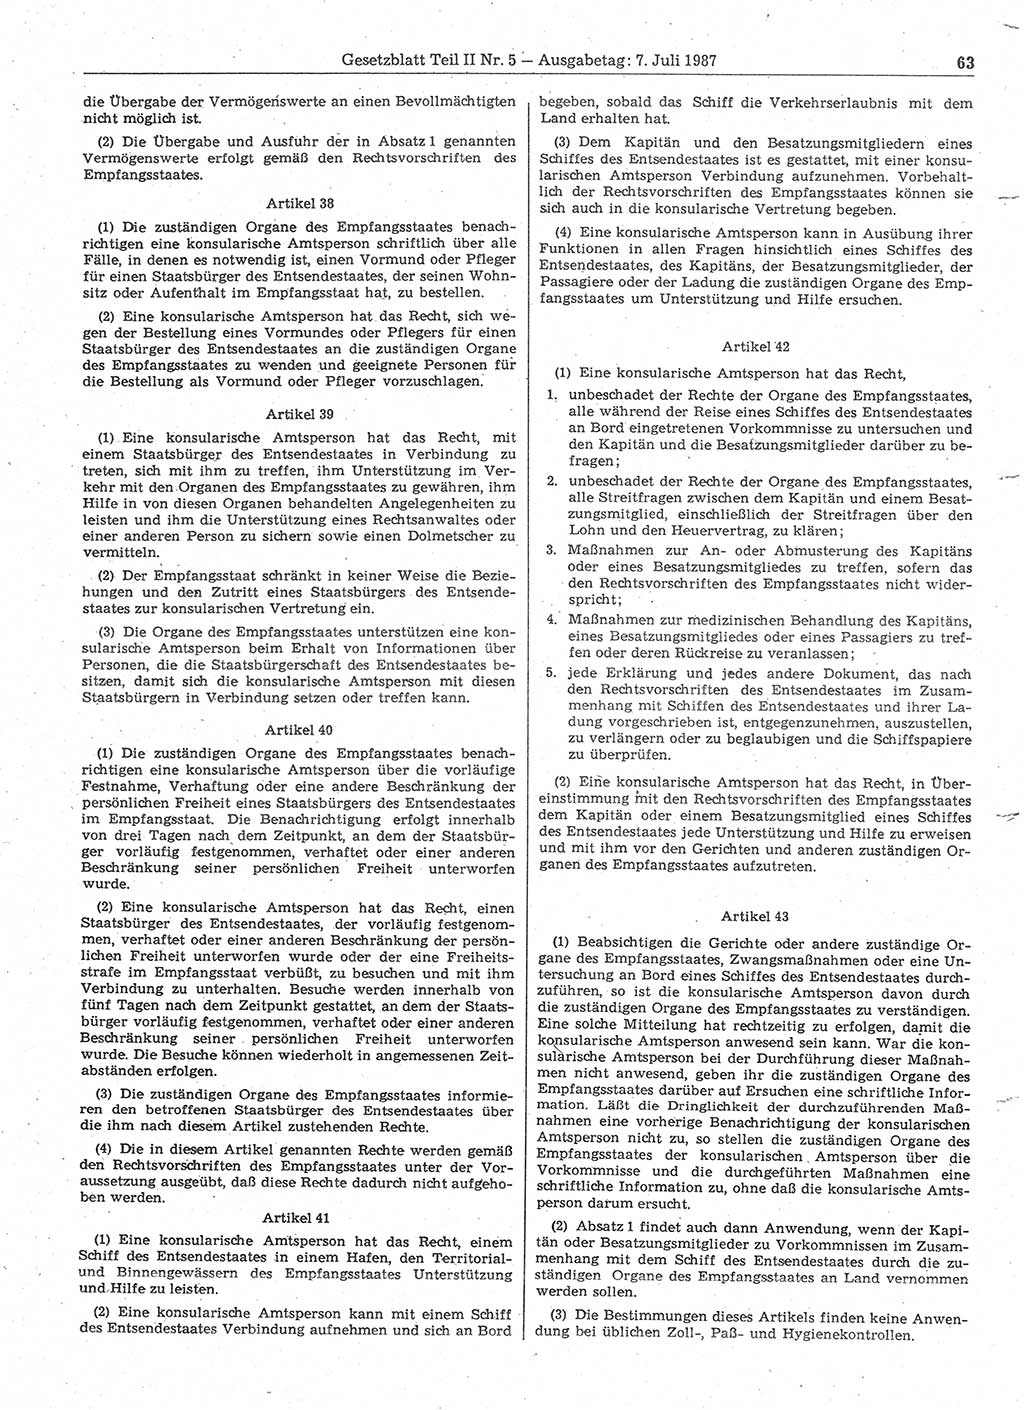 Gesetzblatt (GBl.) der Deutschen Demokratischen Republik (DDR) Teil ⅠⅠ 1987, Seite 63 (GBl. DDR ⅠⅠ 1987, S. 63)